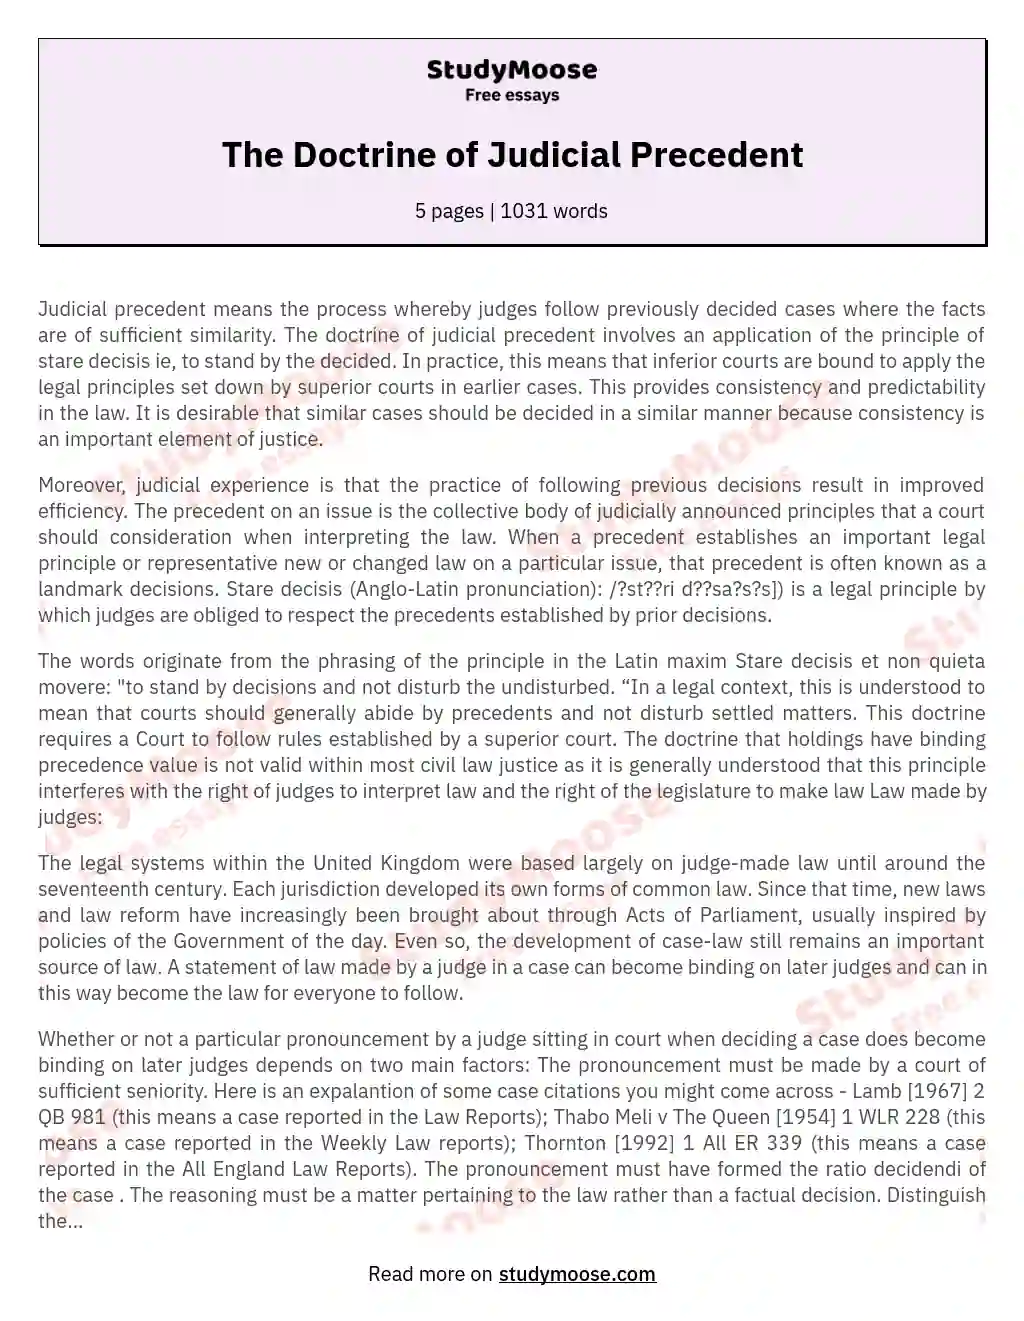 doctrine of judicial precedent essay